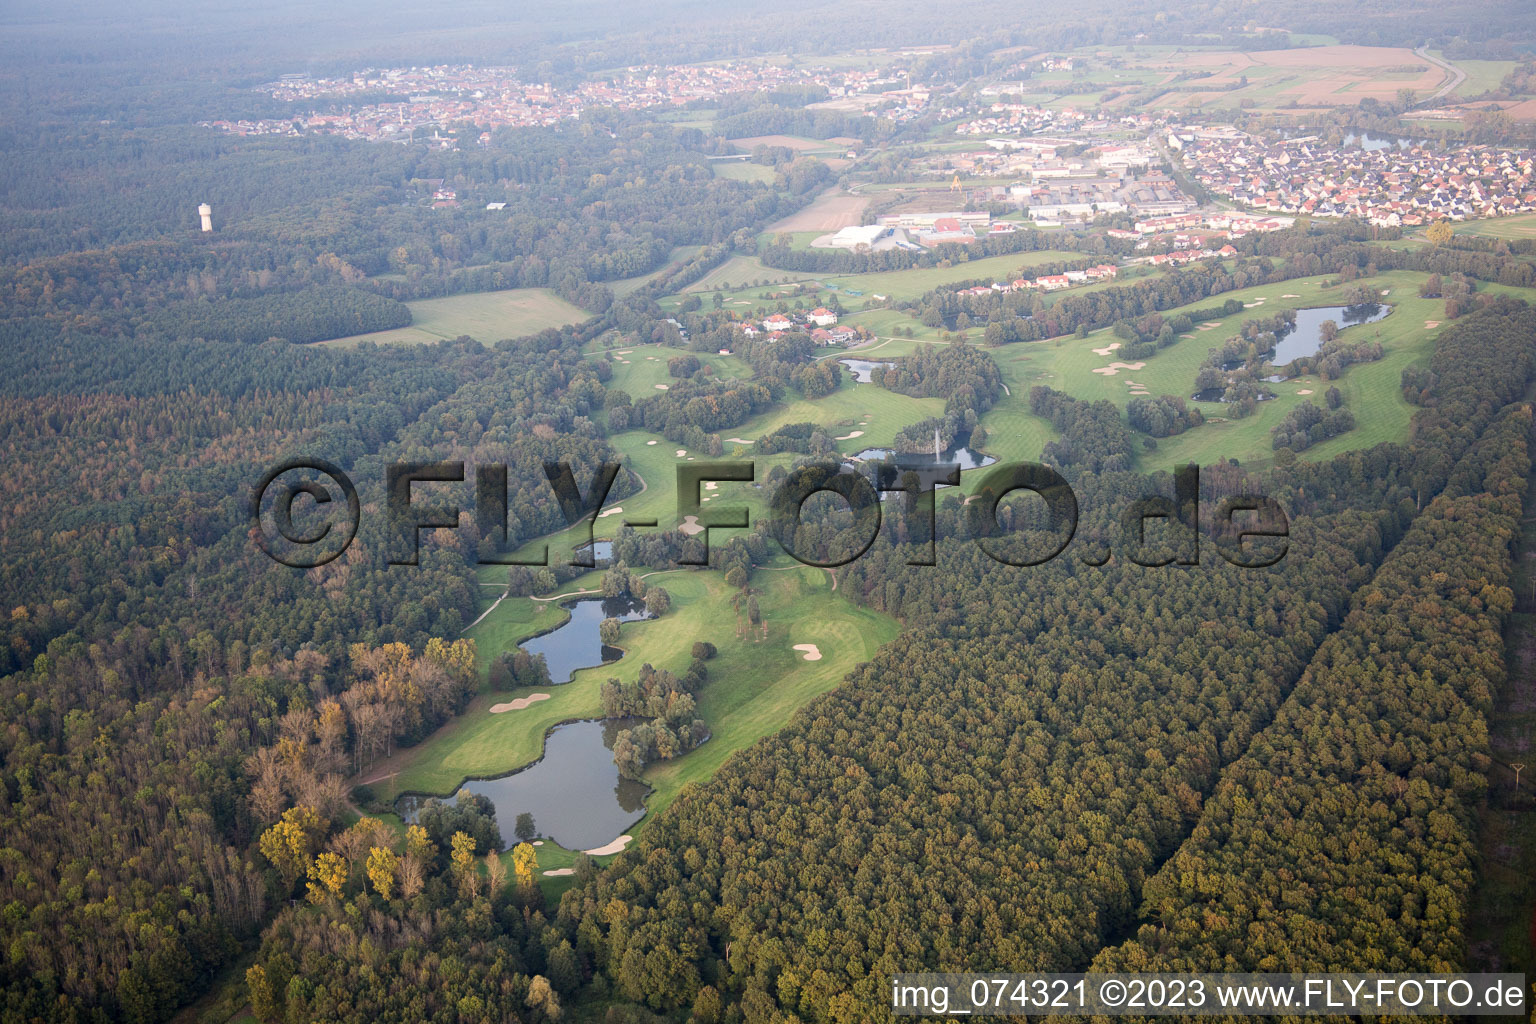 Vue aérienne de Terrain de golf à Soufflenheim dans le département Bas Rhin, France